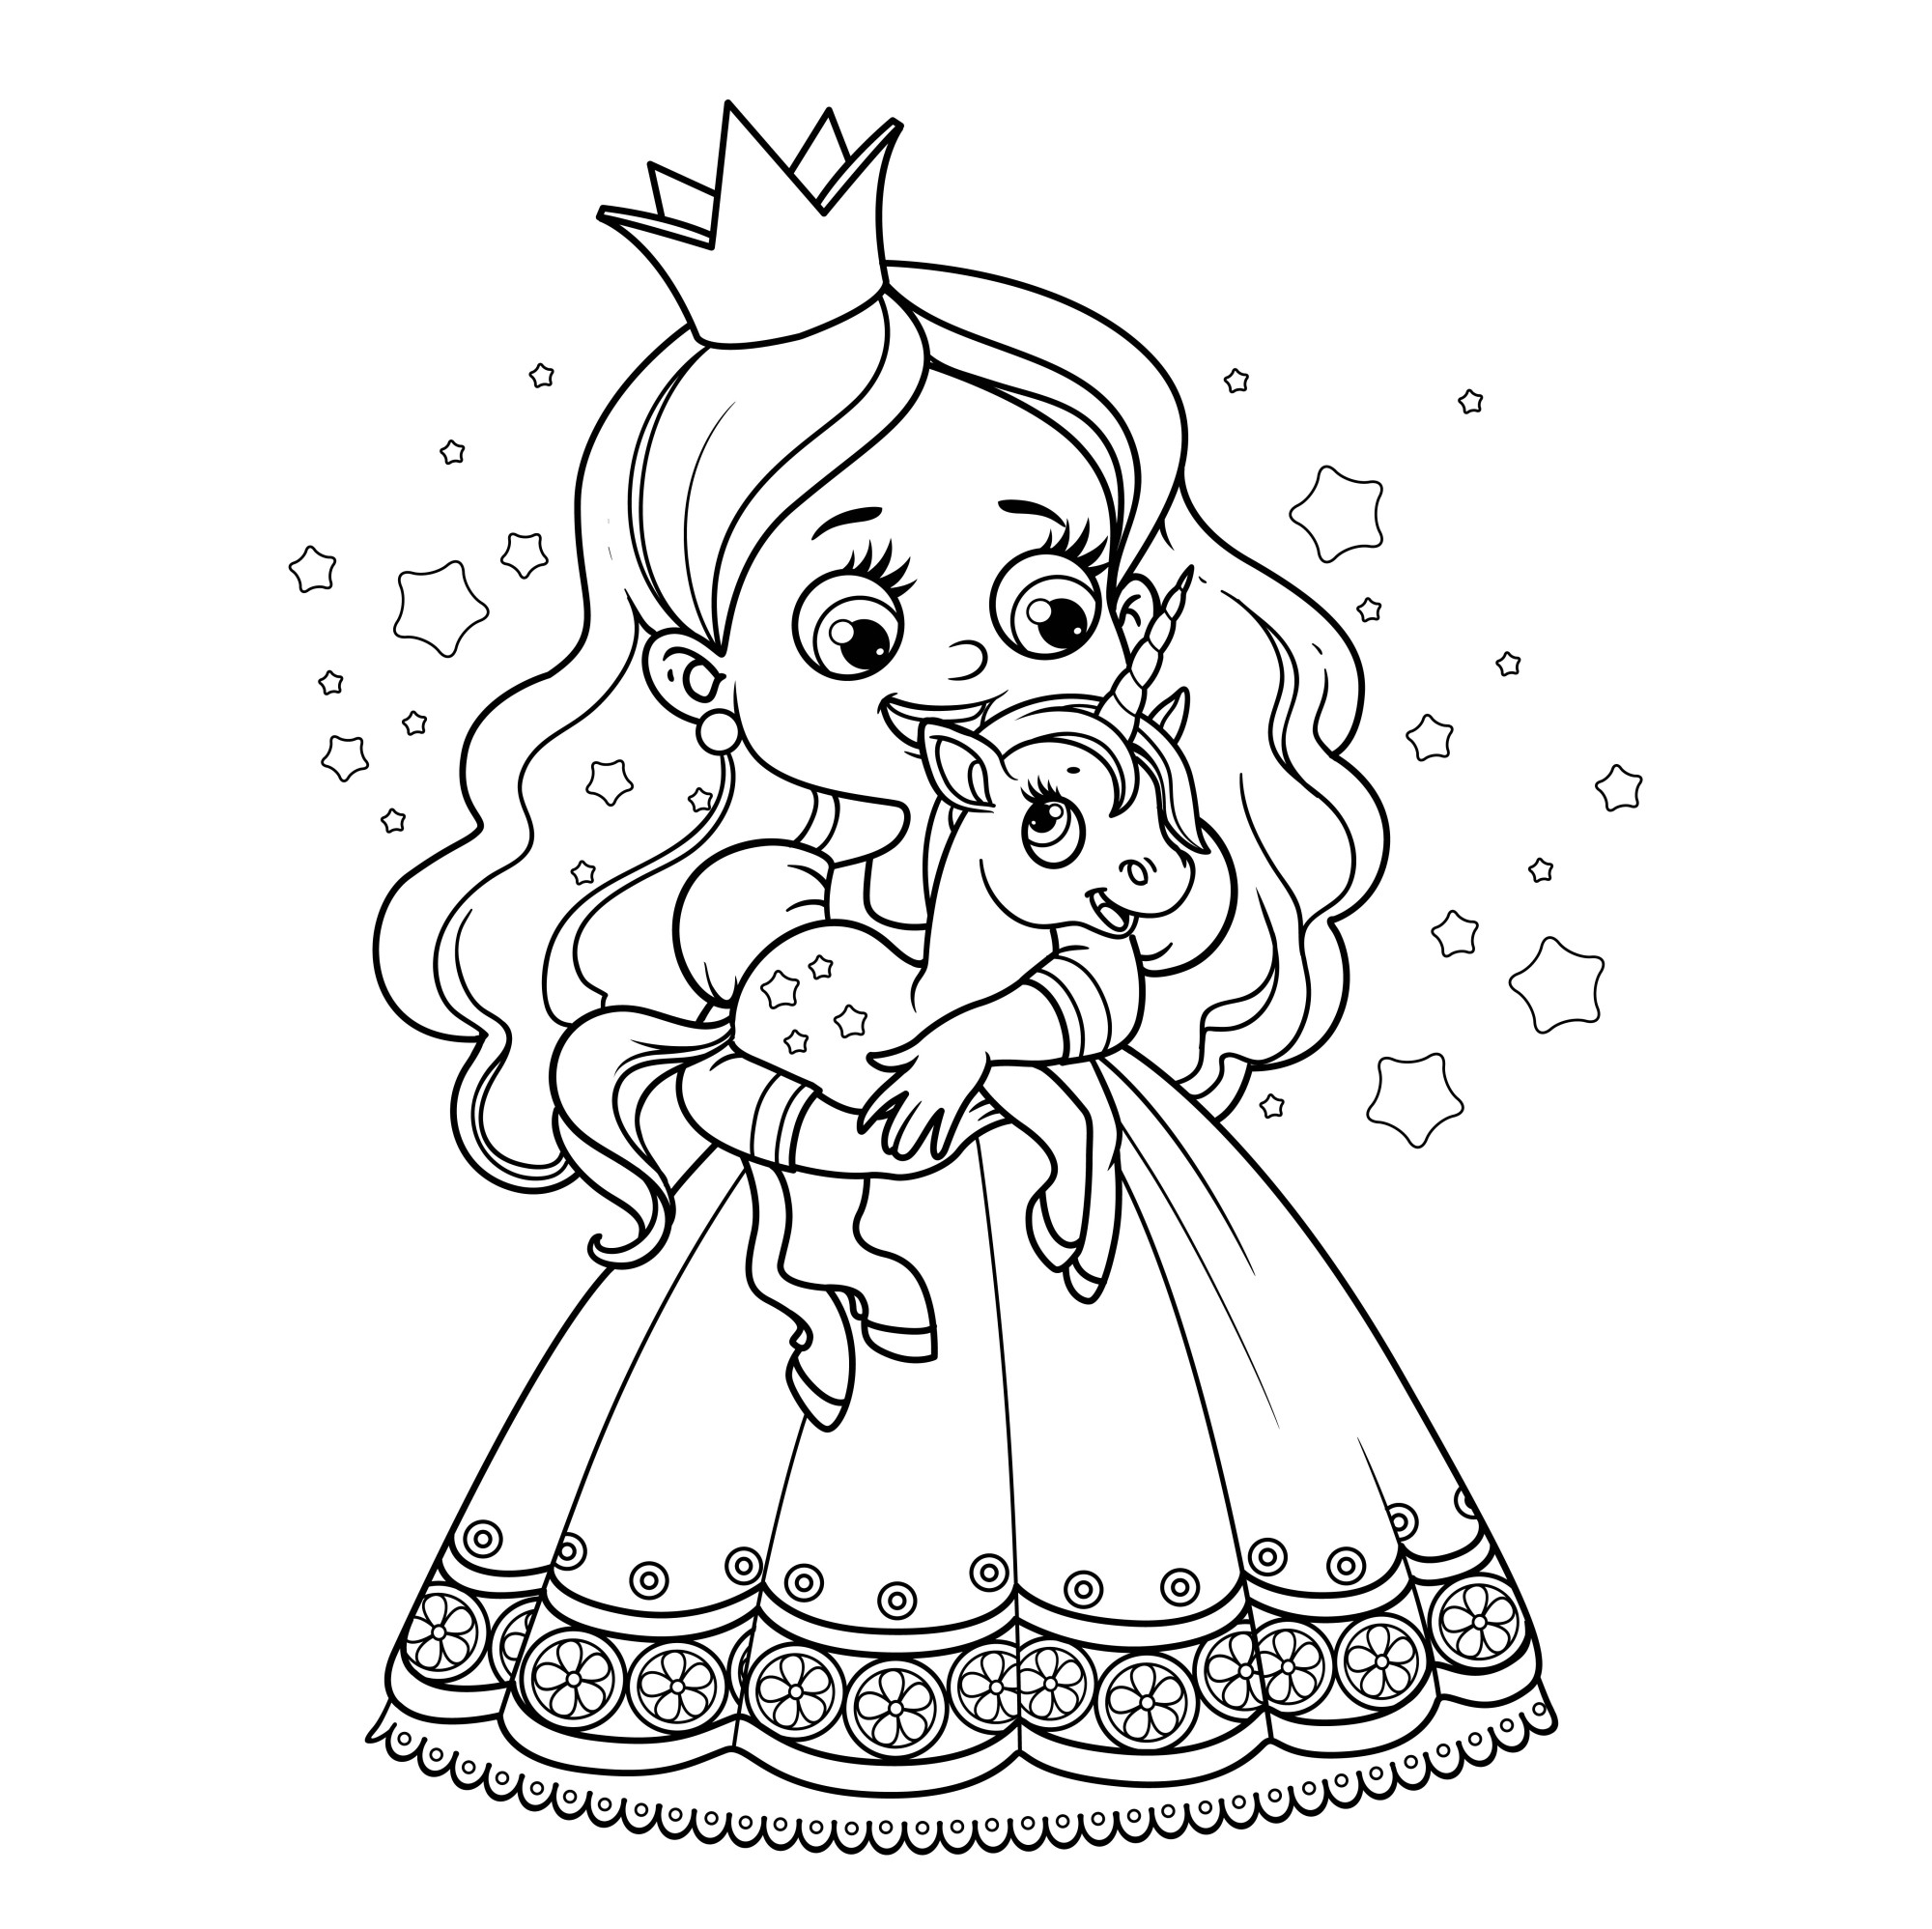 Раскраска для детей: принцесса держит в руках сказочного единорога